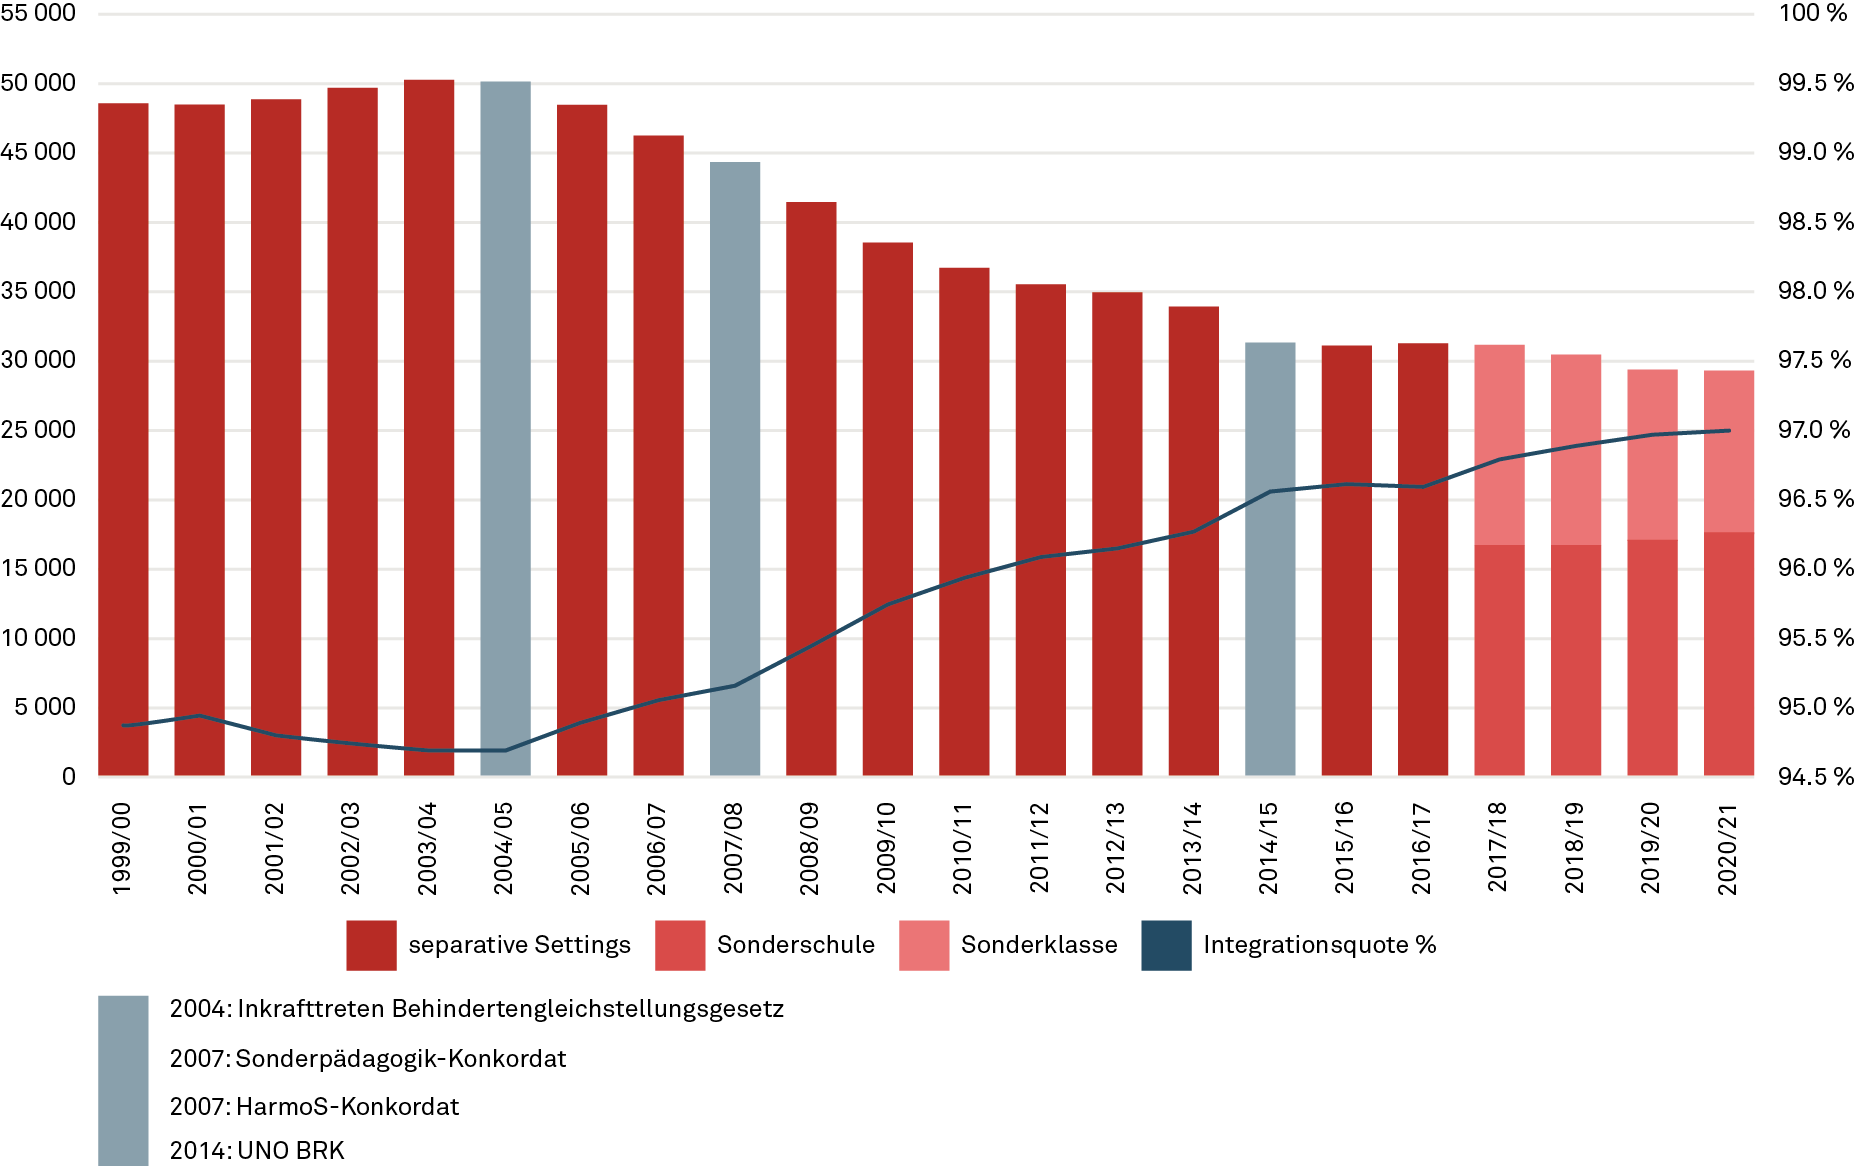 Entwicklung Integrationsquote in der Schweiz 1999 – 2020